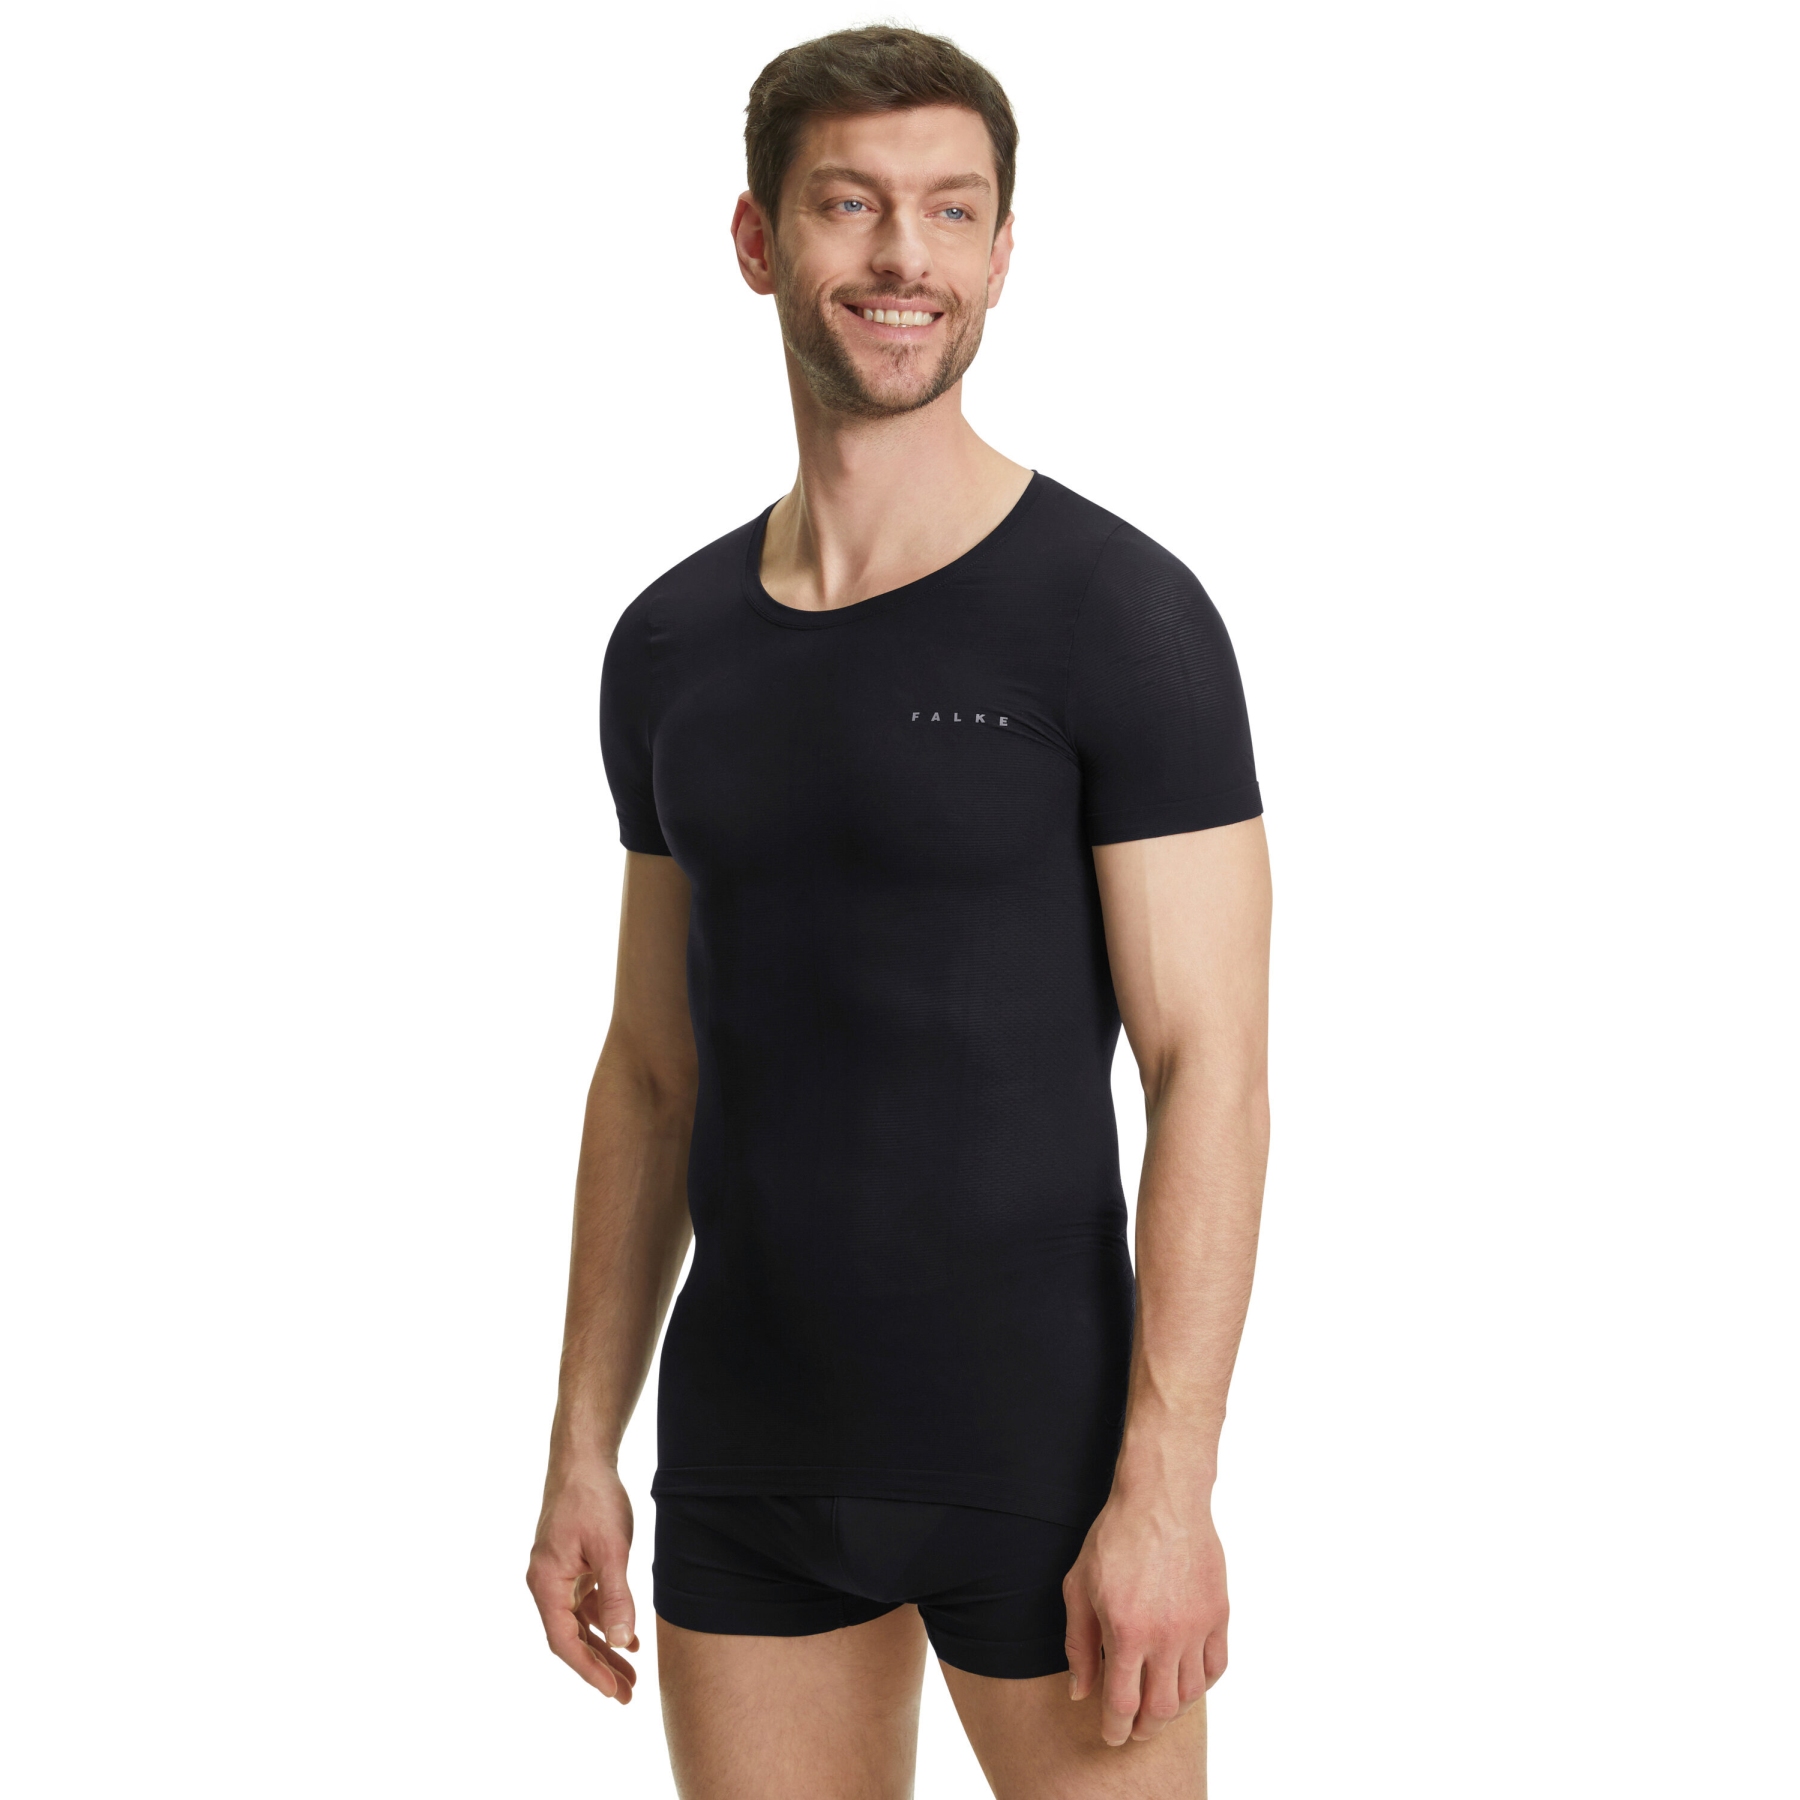 Image of Falke Ultralight Cool Short Sleeve Shirt Men - black 3000